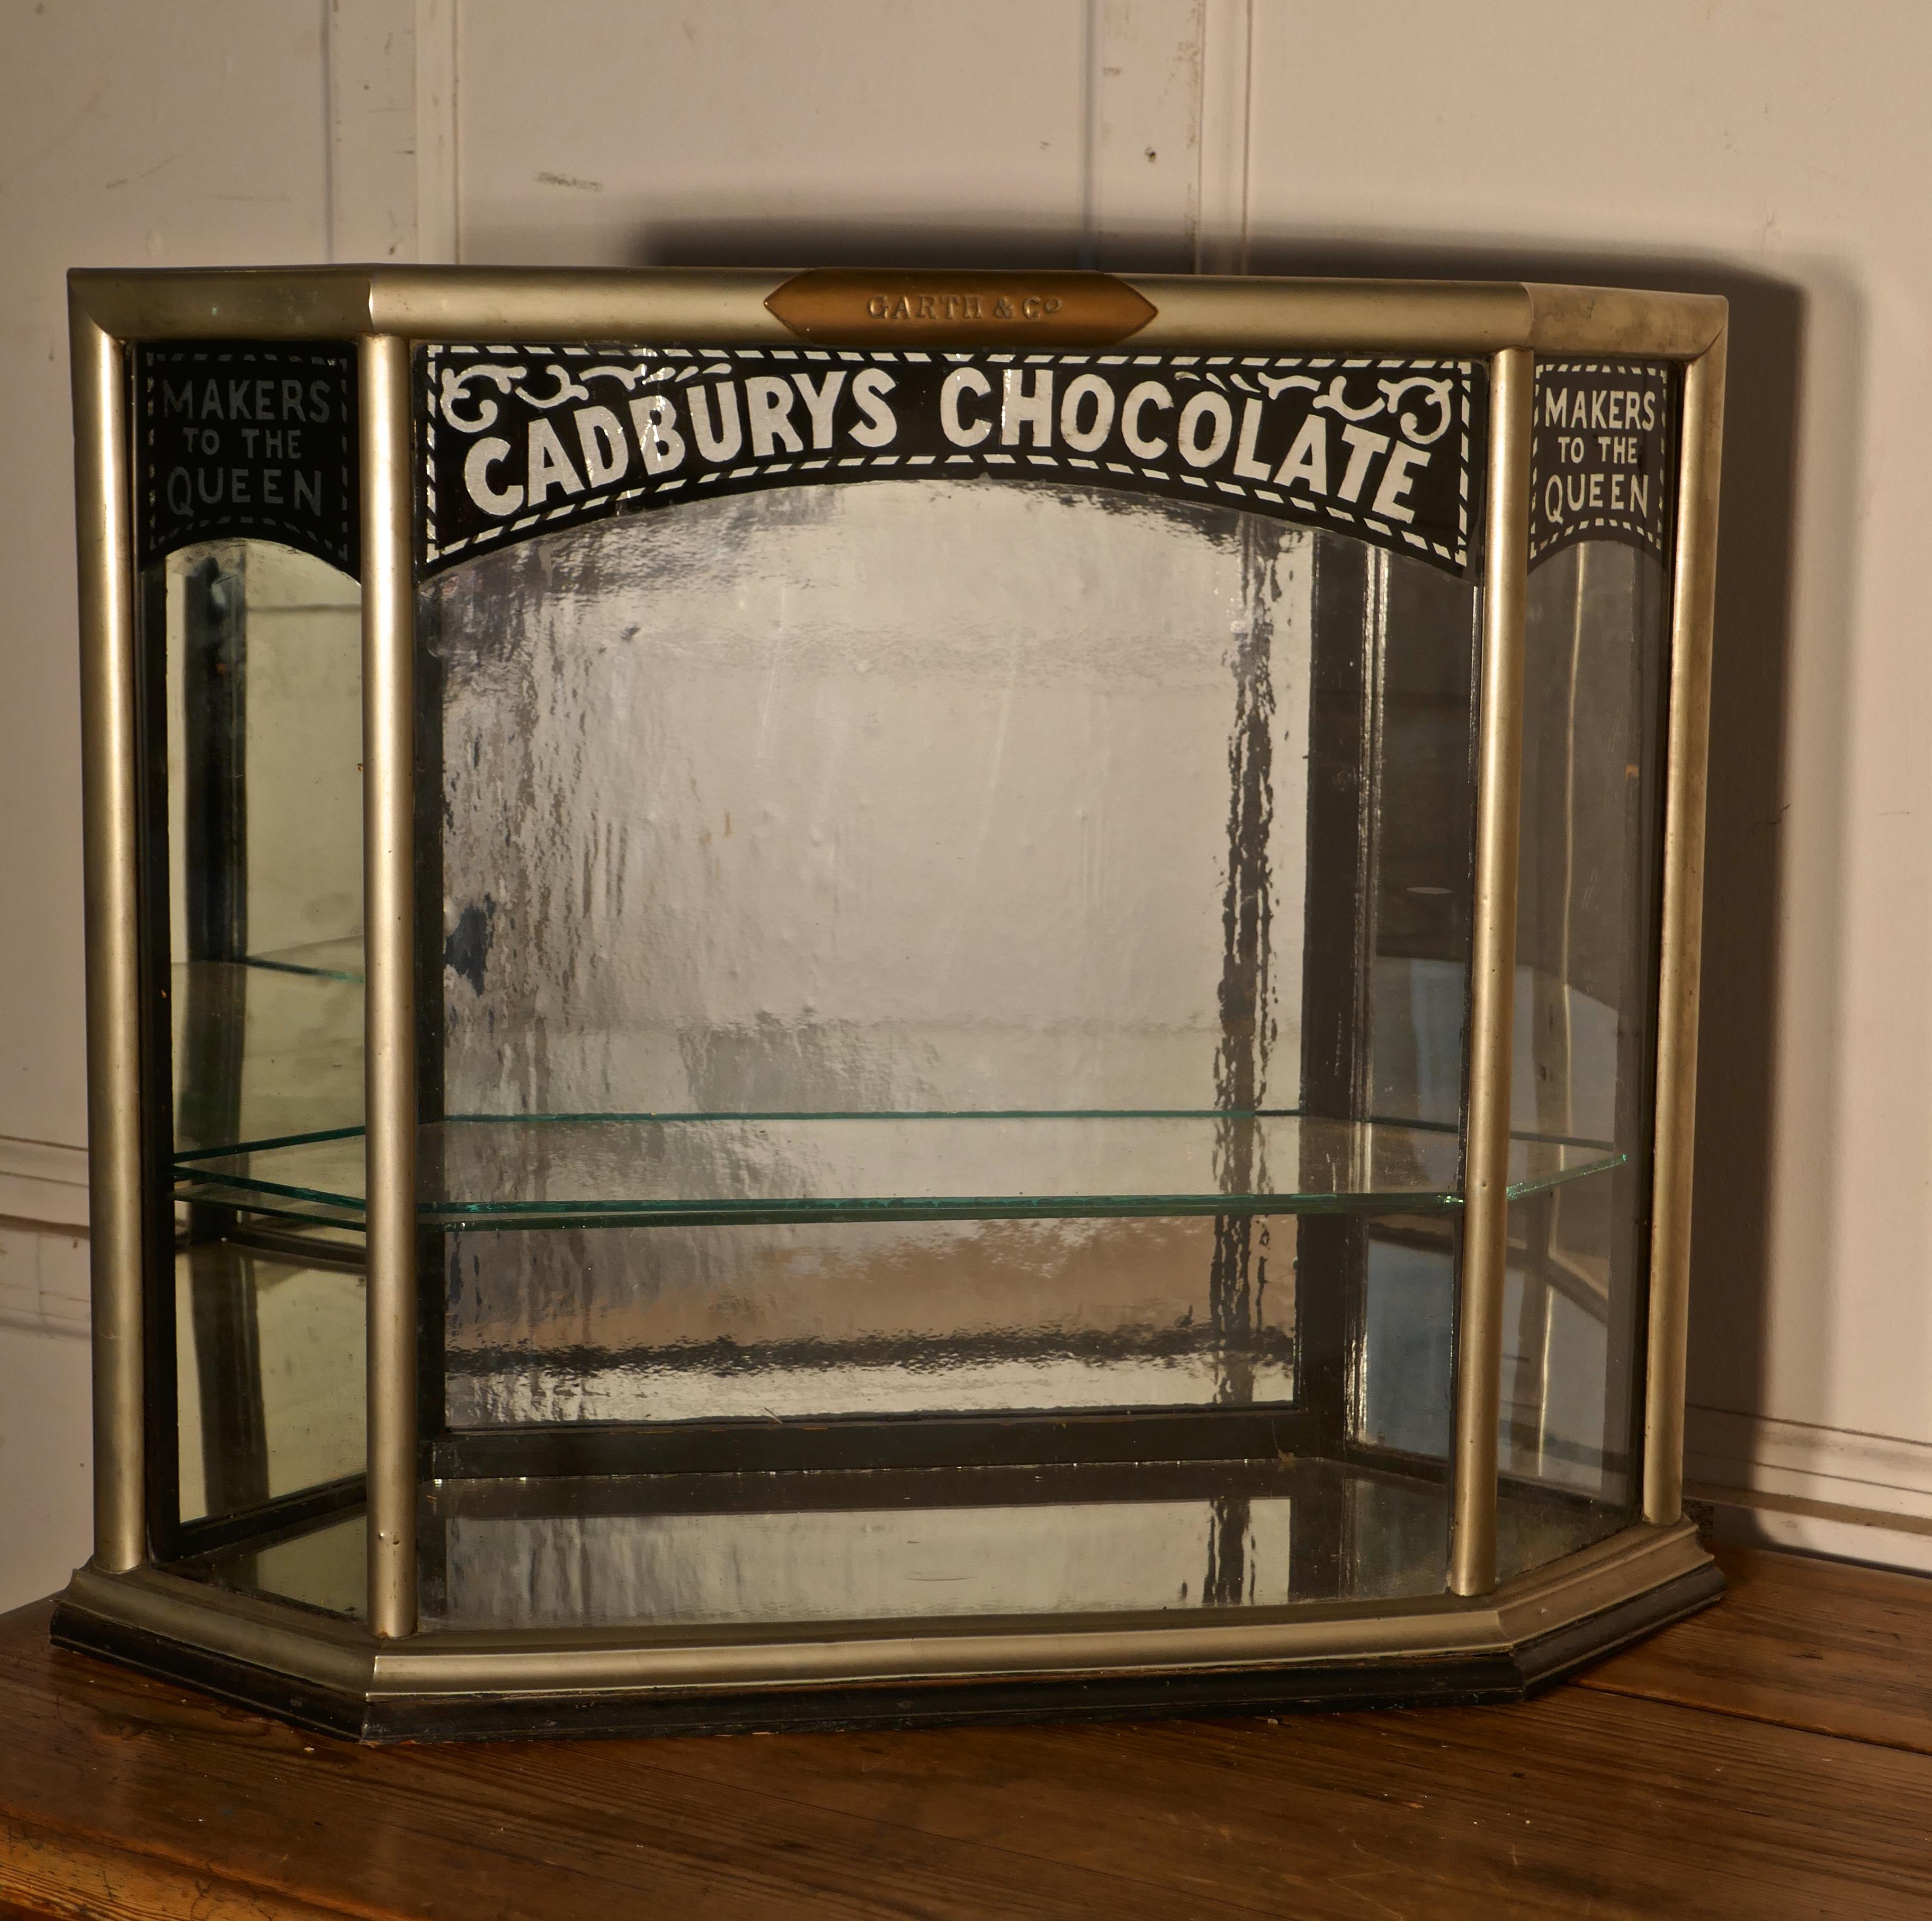 Cadbury's Art Deco Vitrine, Art Deco Crome

Dies ist eine kleine, aber charmante Cadbury's Sweet Shop Display Cabinet ist es eine Theke oben Stück, von oben kann man sehen, es ist in Form eines konvexen Sechseck, mit einer kleinen Tür an jedem